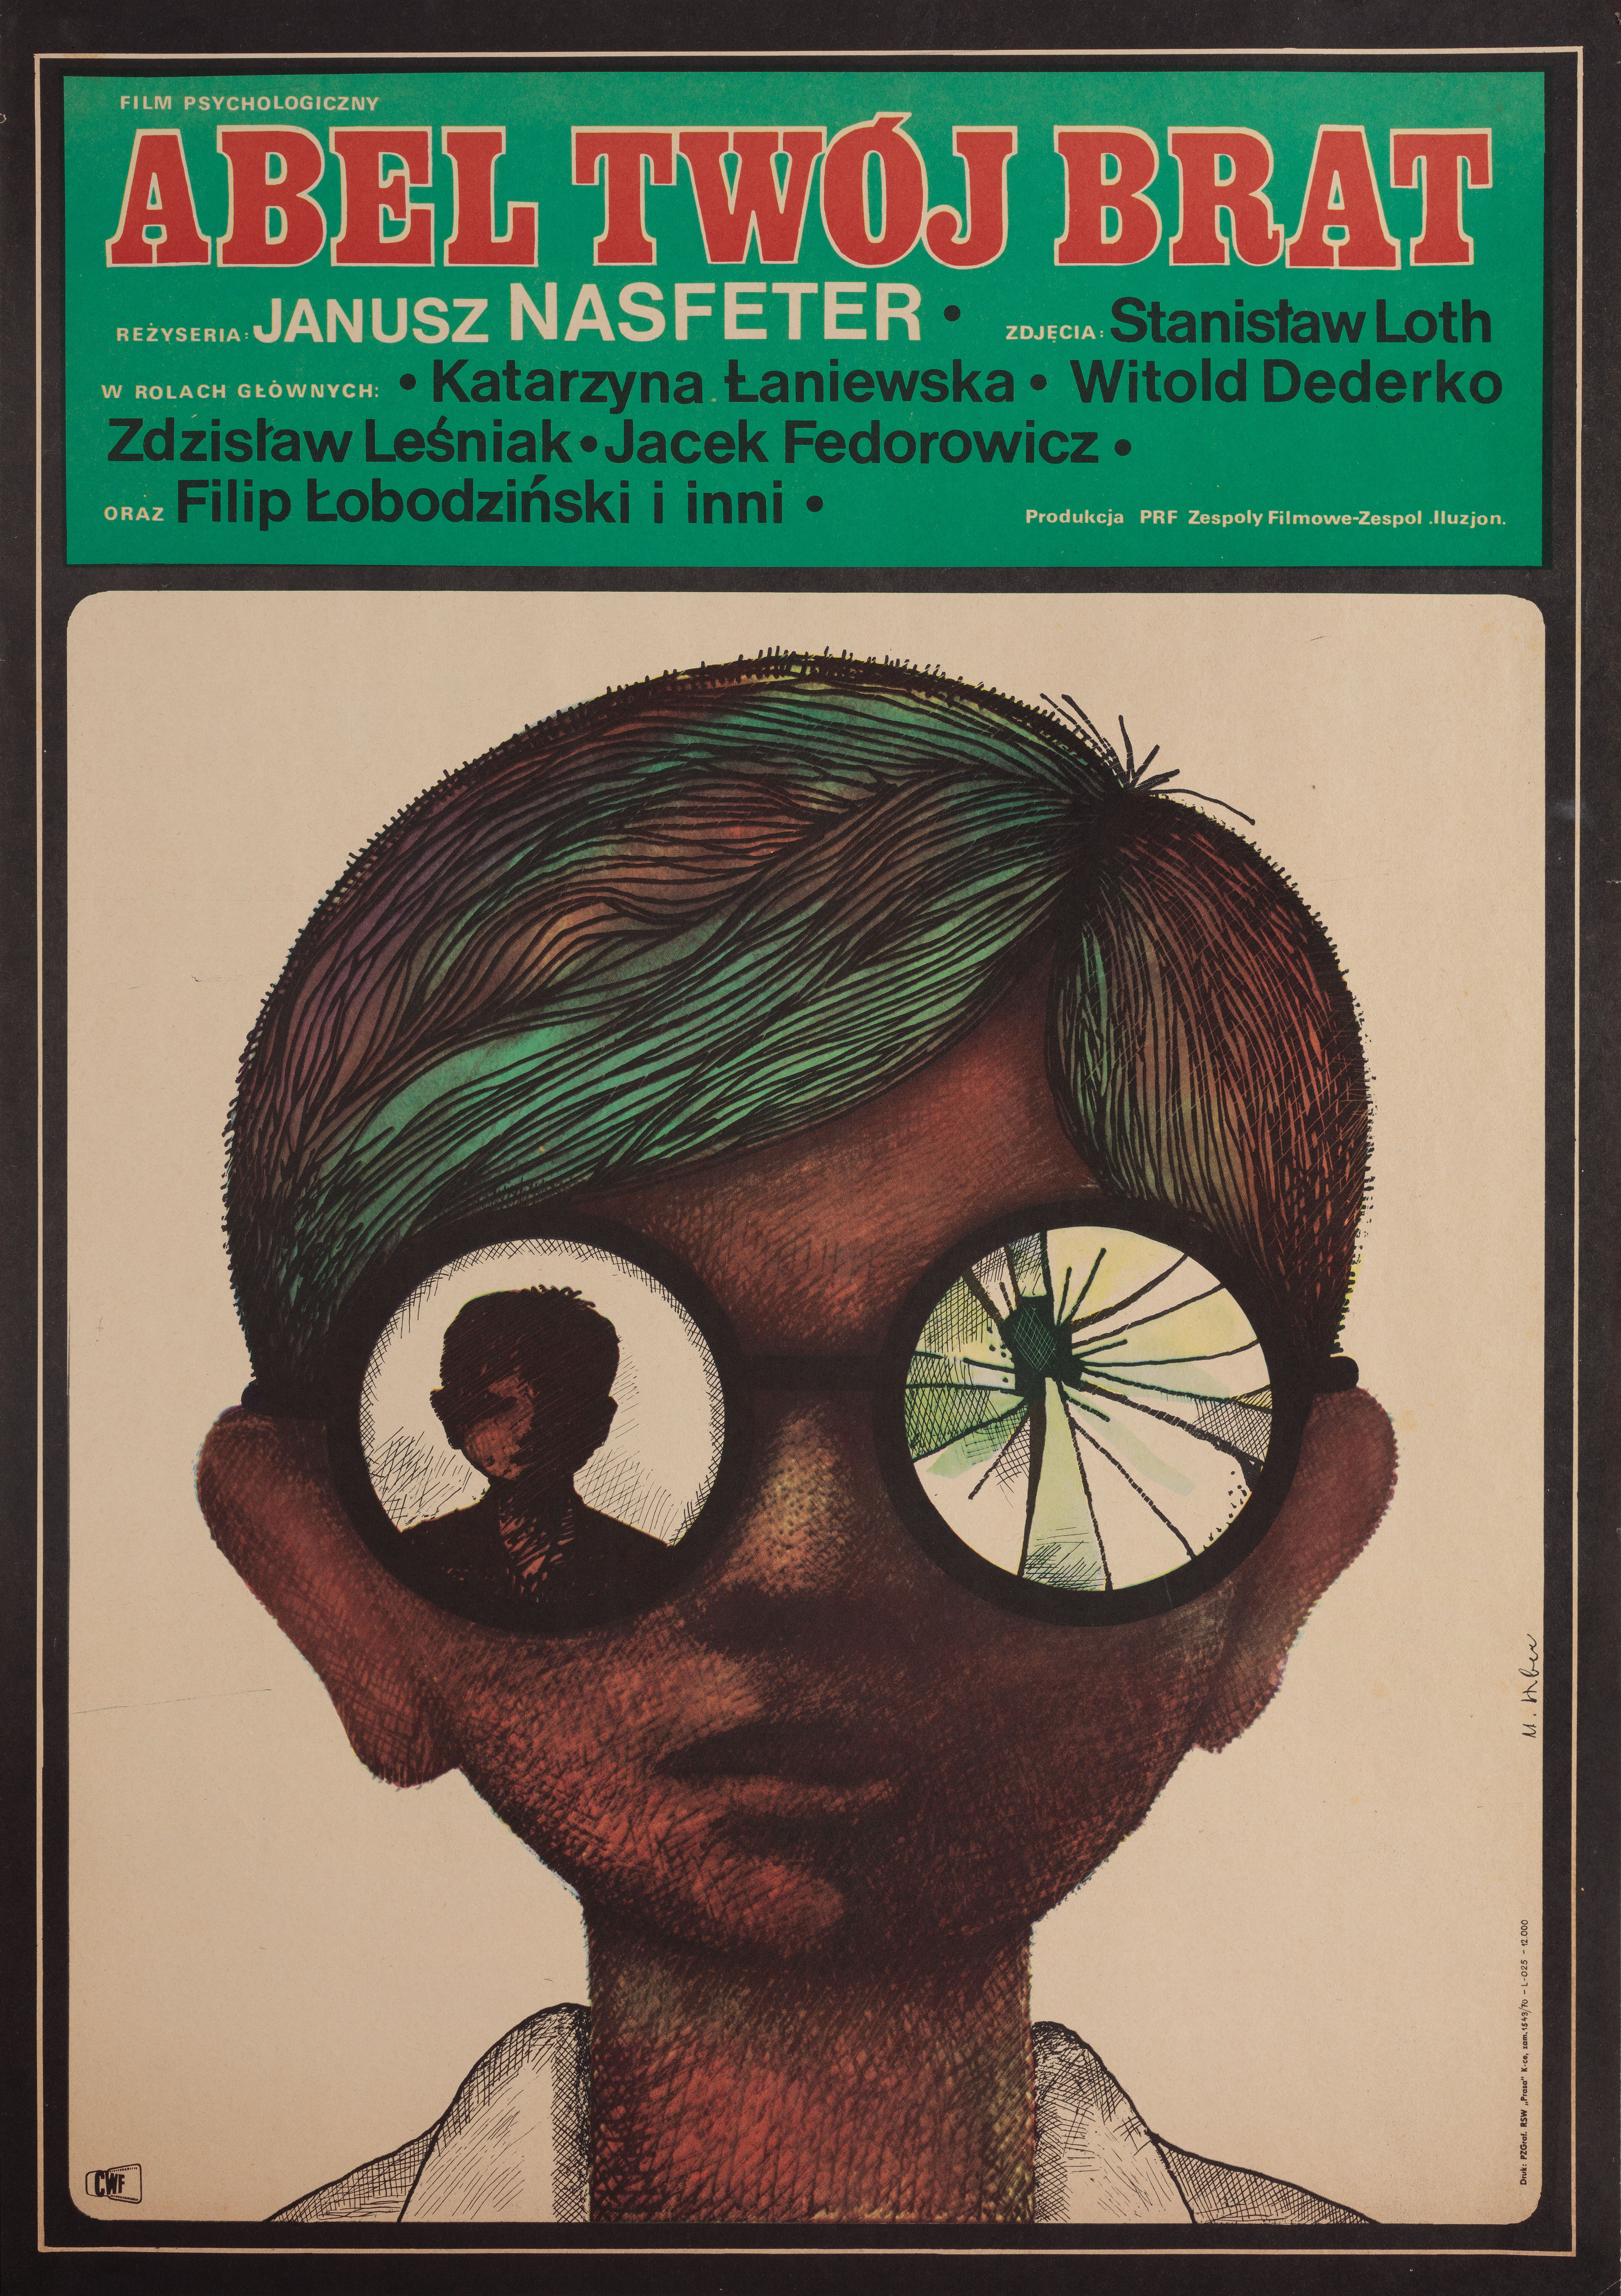 Авель, твой брат (Abel, Your Brother, 1970), режиссёр Януш Насфетер, польский плакат к фильму, 1970 год, автор Мацей Хибнер